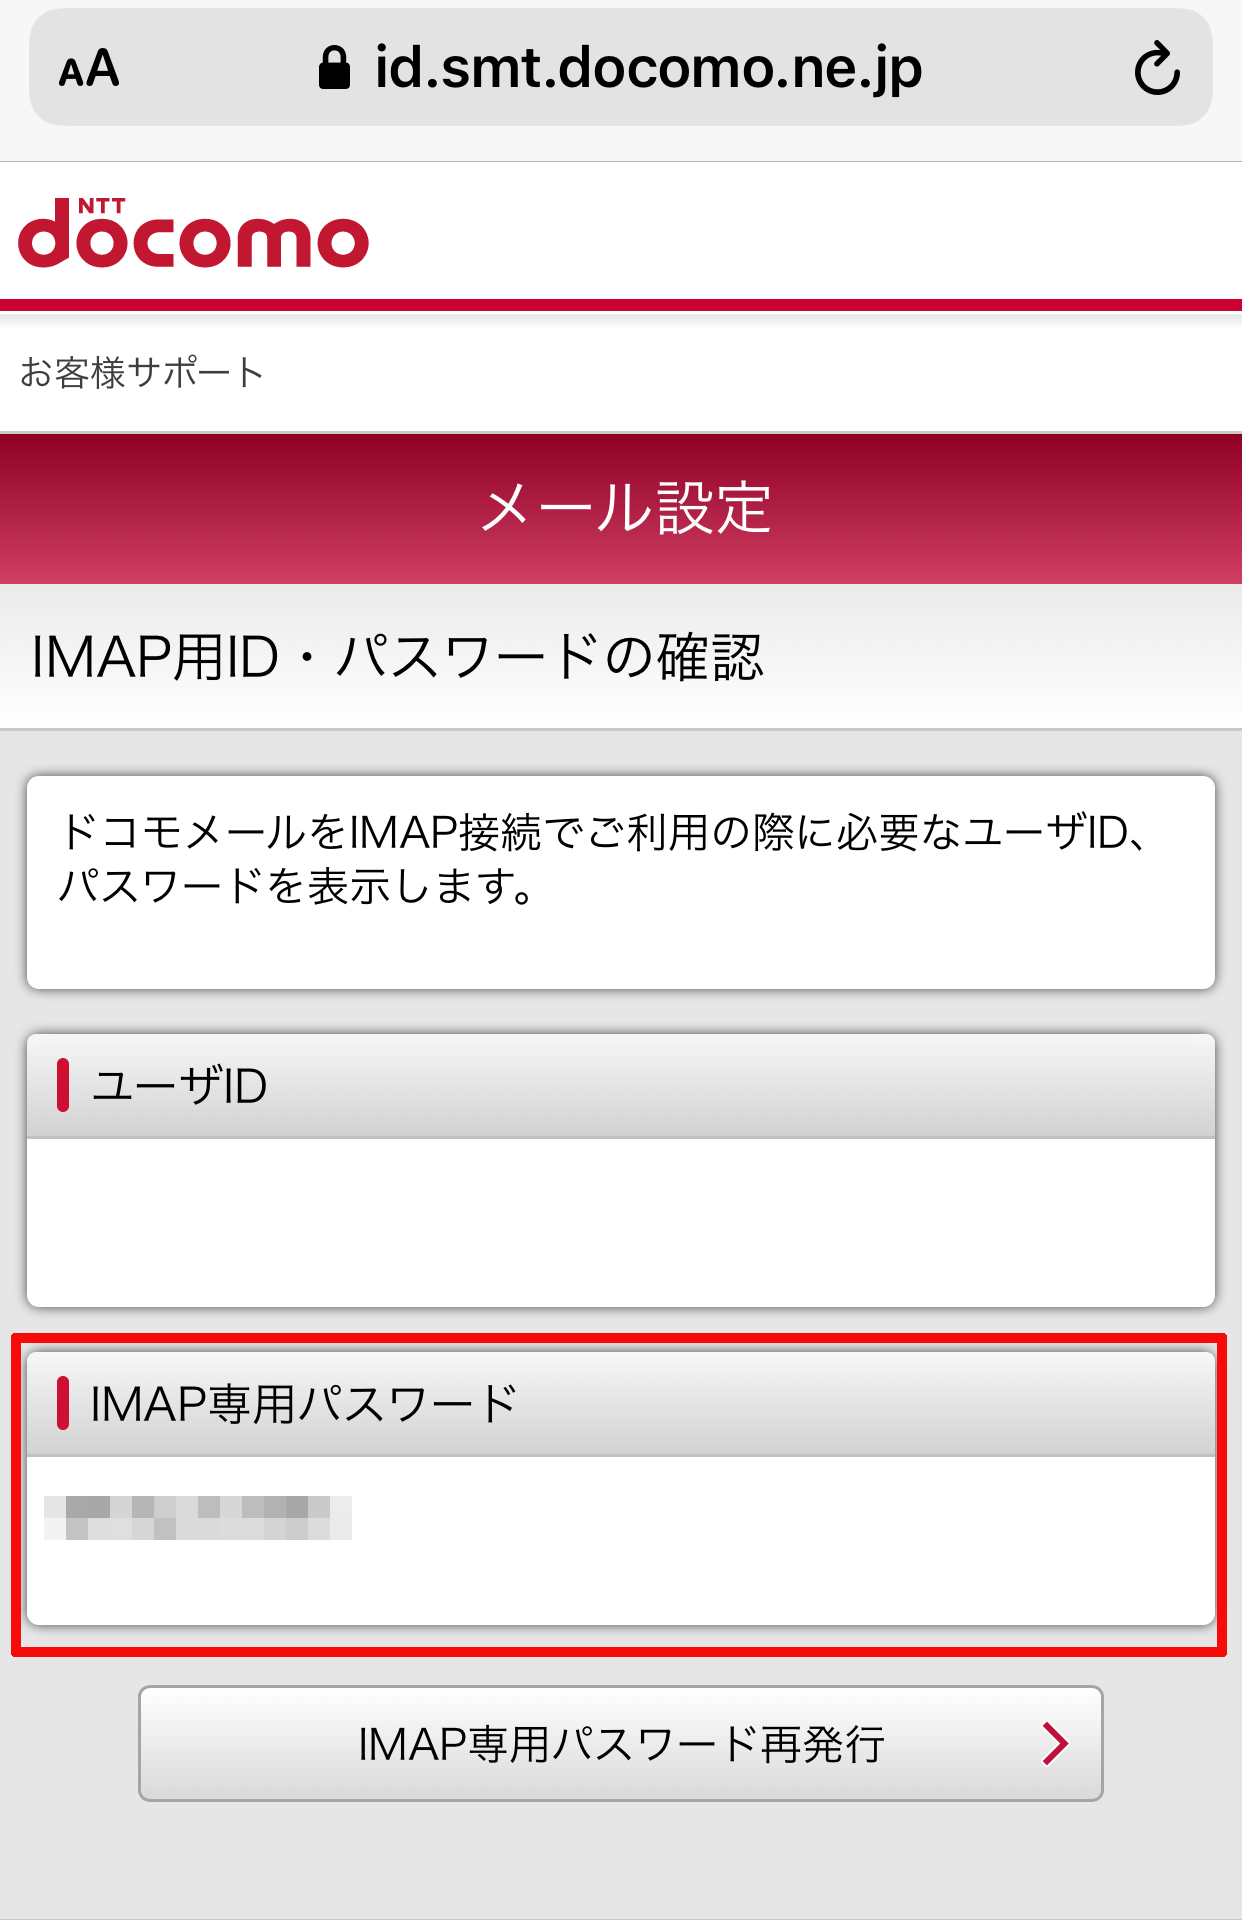 「IMAP専用パスワード」のところからご自身のIMAP専用パスワードを確認することができます。